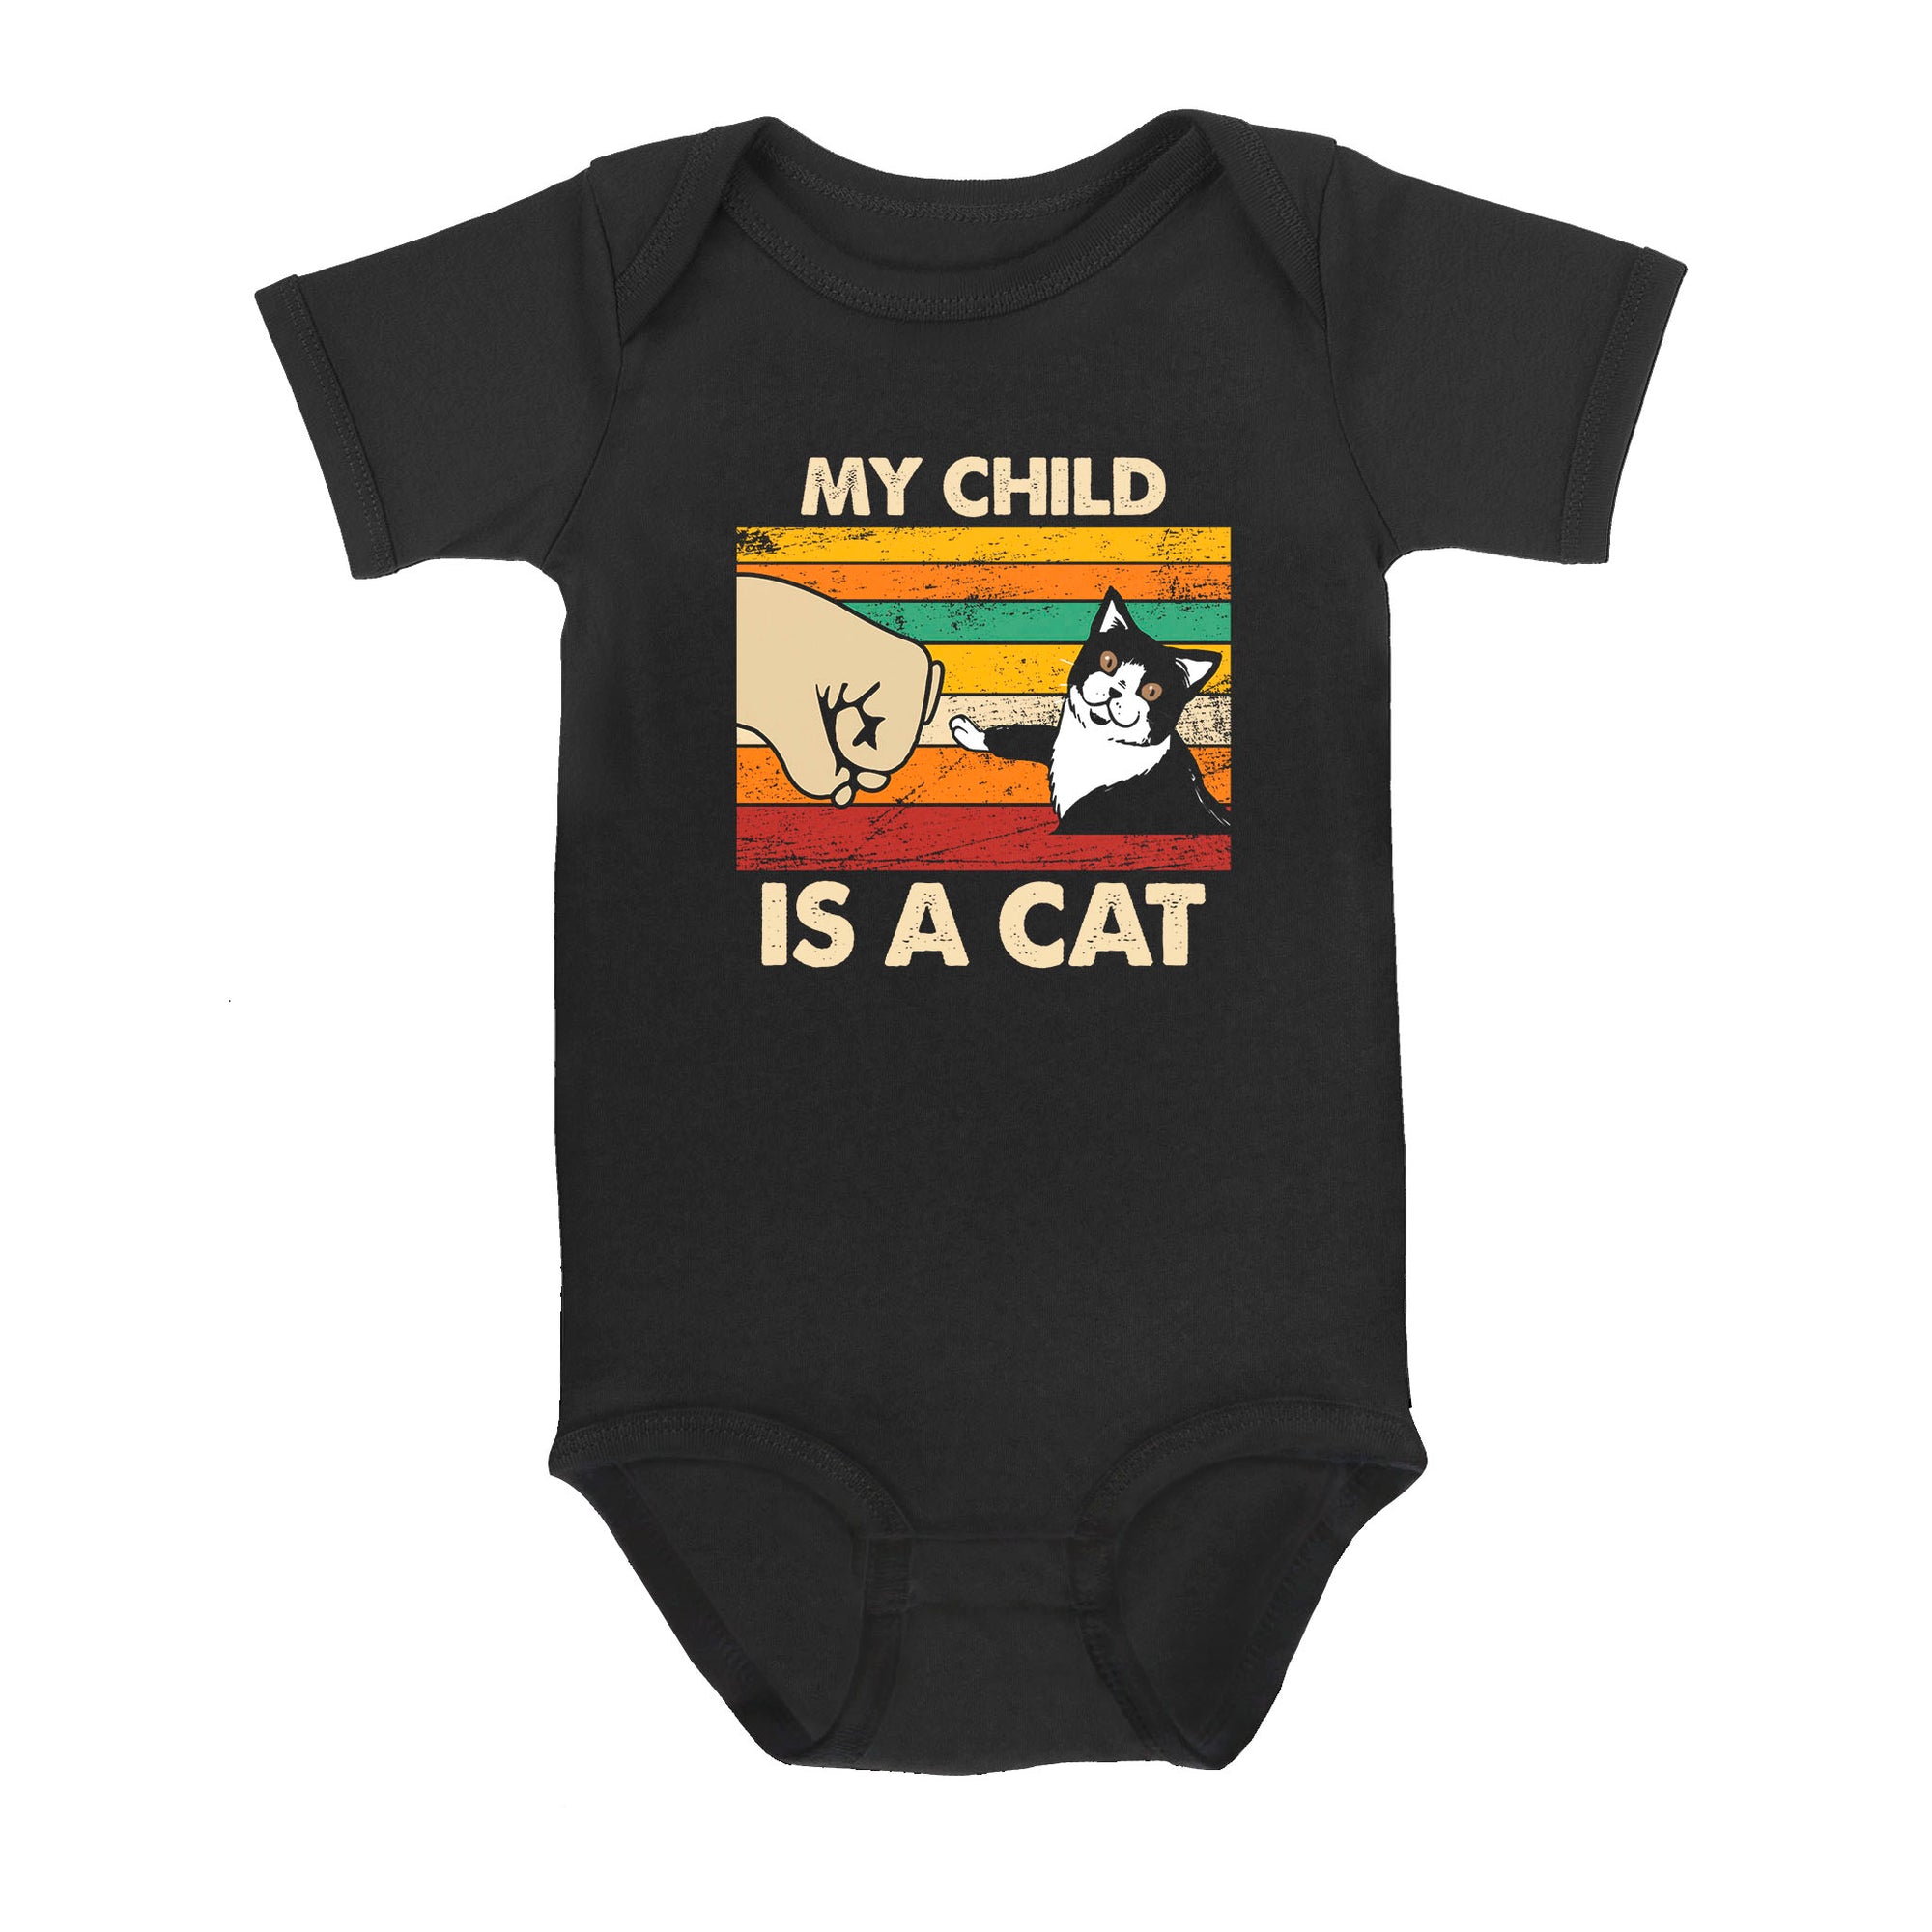 My Child Is A Cat - Baby Onesie